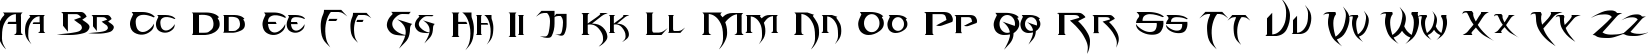 Пример написания английского алфавита шрифтом Blade 2